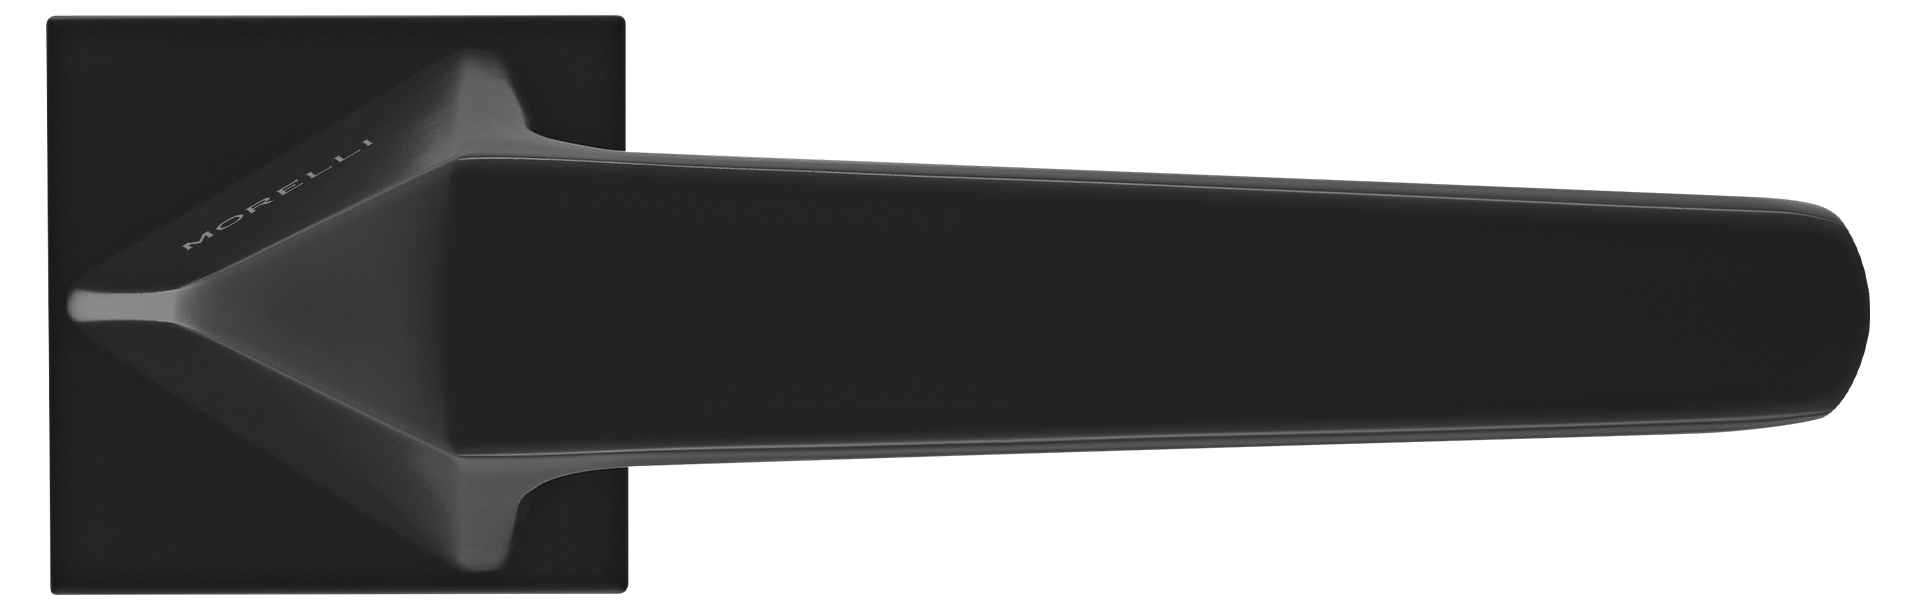 SOUK ручка дверная на квадратной розетке 6 мм, MH-55-S6 BL, цвет - черный фото купить в Самаре